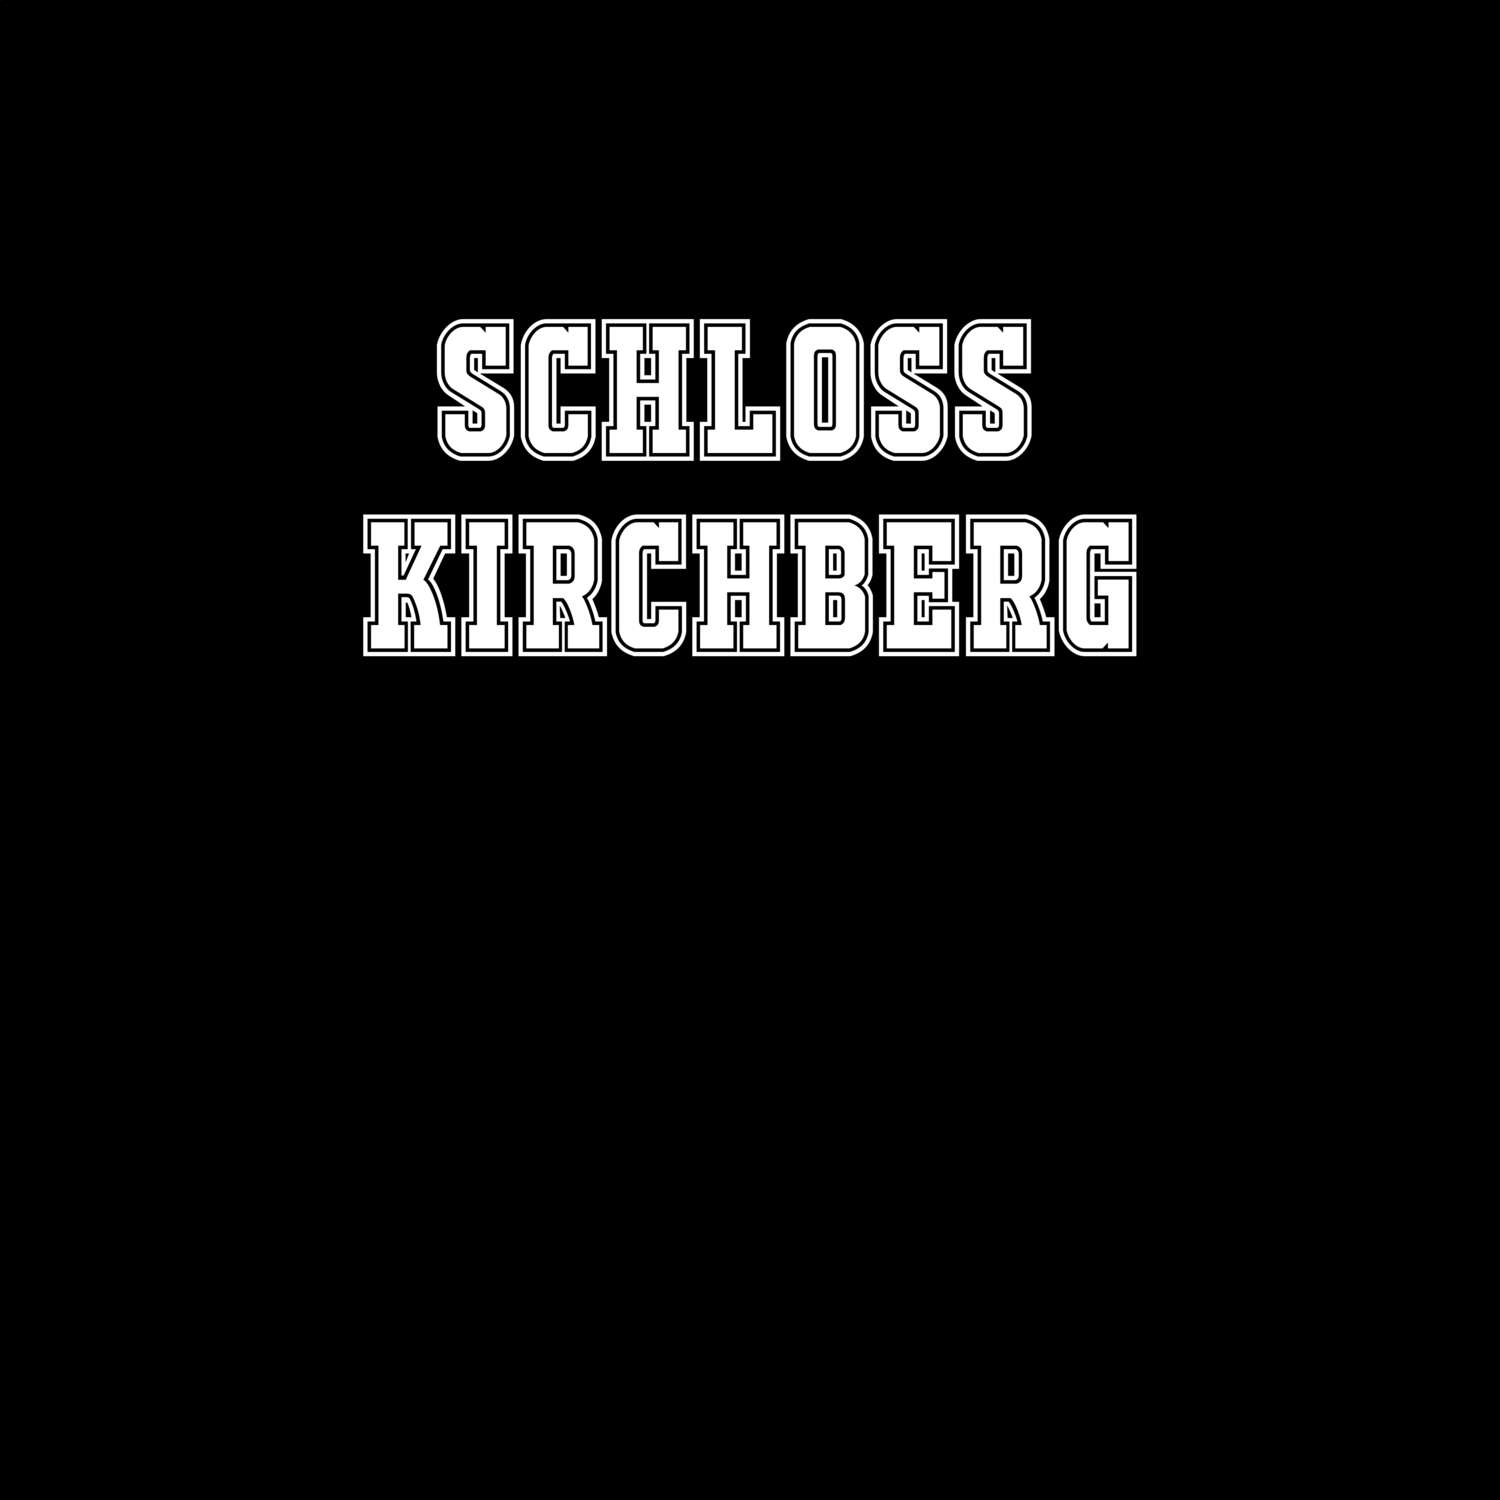 Schloß Kirchberg T-Shirt »Classic«